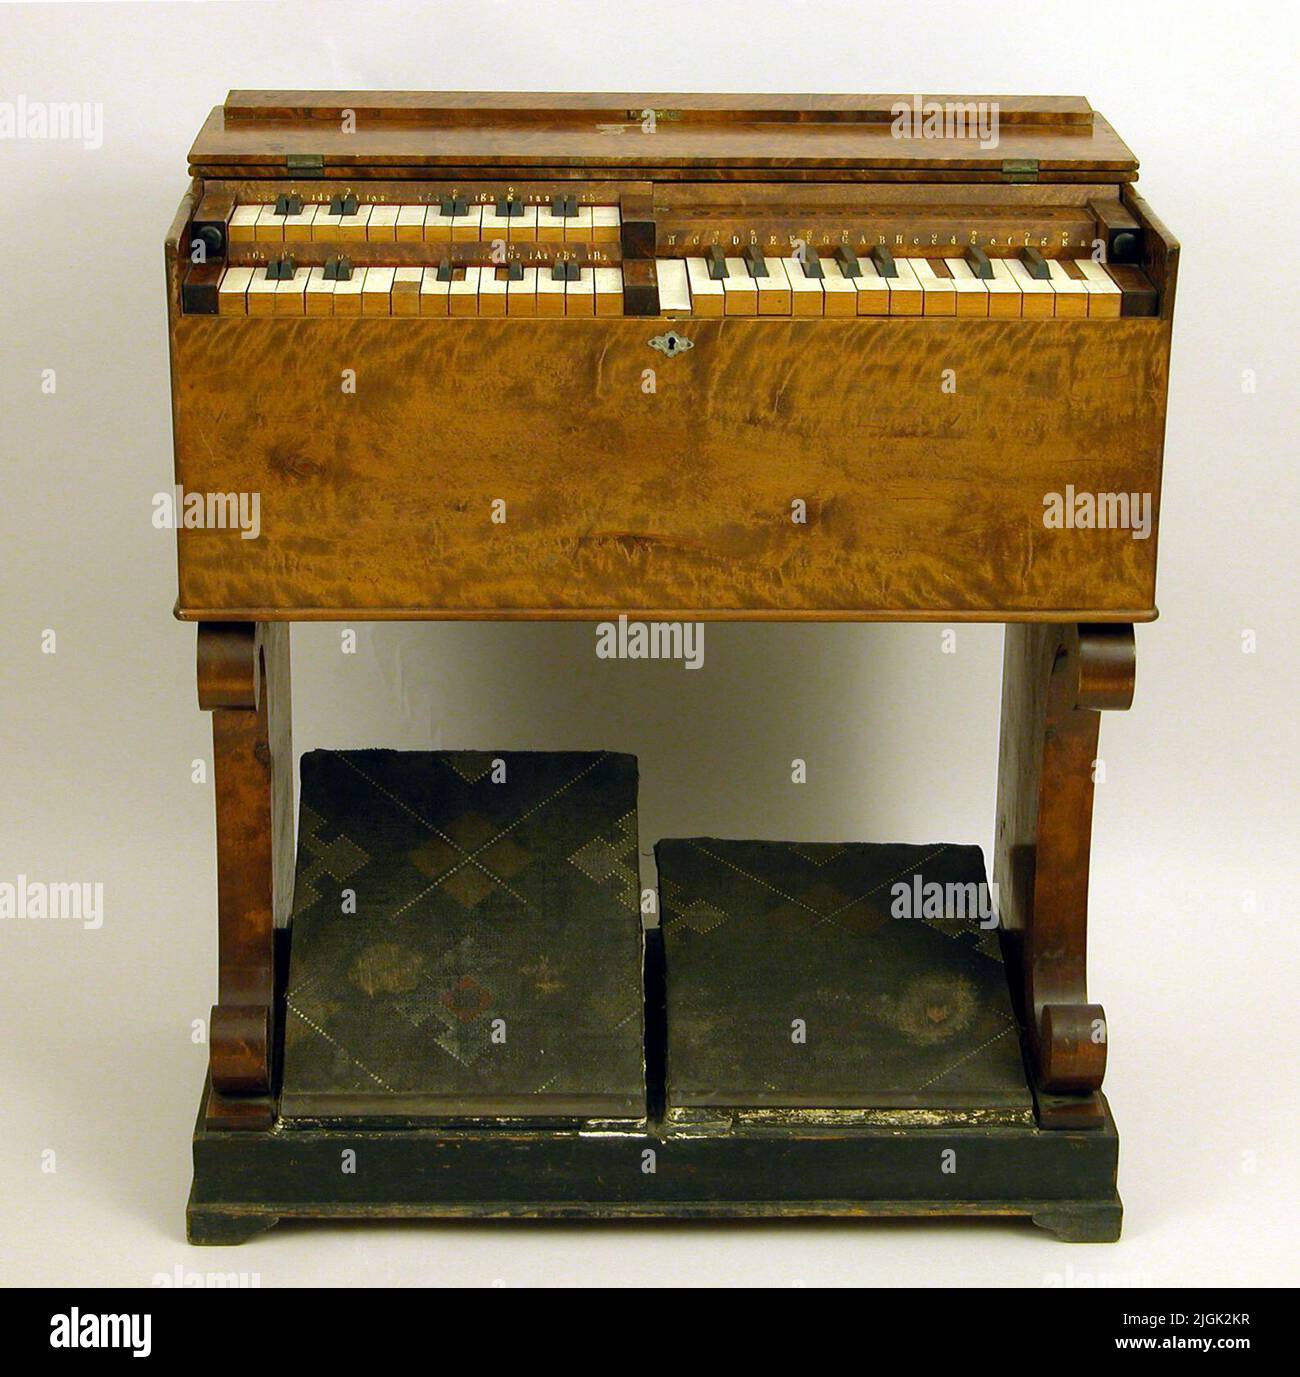 Organo della camera Orgel. Armonio. Tre manuali. Due soffietti a pressione, condotti d'aria sui lati. I tramps sono rivestiti con un tappeto in sughero a griglia. Realizzato intorno al 1866. È appartenuto alla cura povera in Karlskrona. La deposizione nel 1922 da parte della povera cura nel Karlskrona.orgeln è prodotta da Andreas Jönsson Åberg (1815-1890). Attivo nel sud della Svezia, nato a Kristianstad, un organista di epoca a Hjortsberga e dal 1870s residente a Karlskrona. Oltre alla costruzione di organi, Åberg si occupa anche della produzione di armonio. Inventò nel 1860s uno strumento con una lingua passante, chiamata 'symphonone', Foto Stock